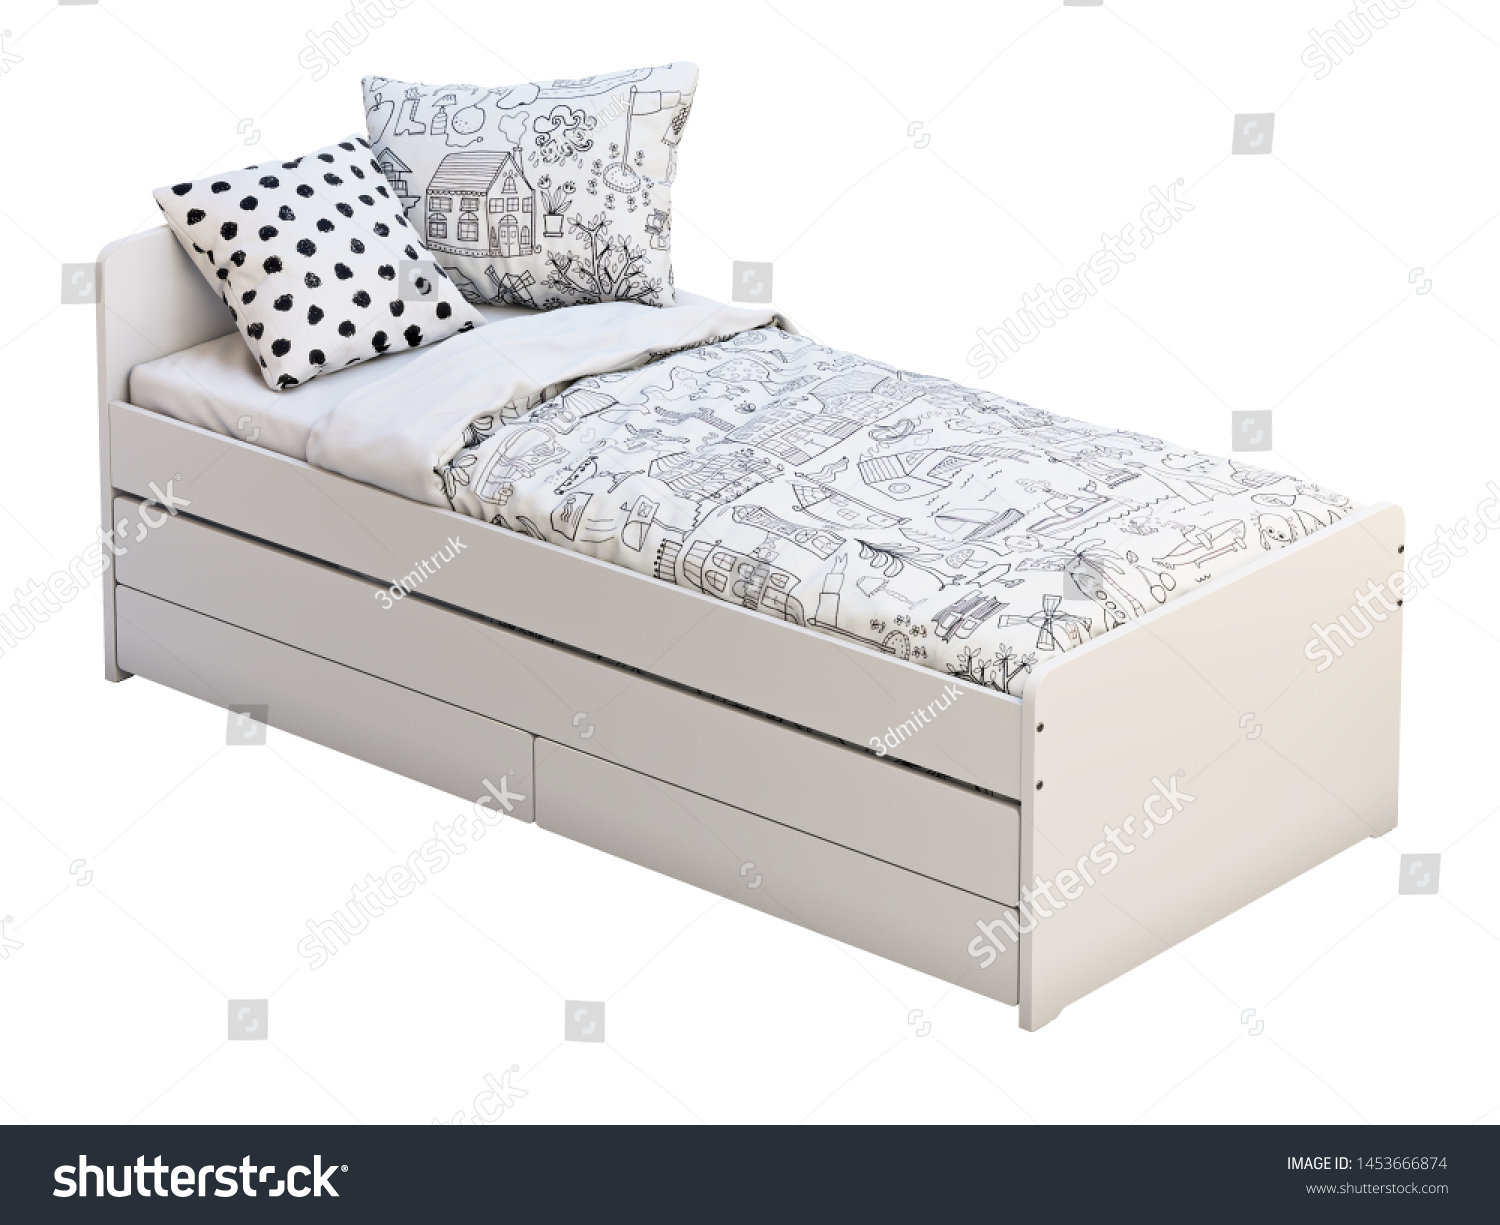 childrens white single bed frame